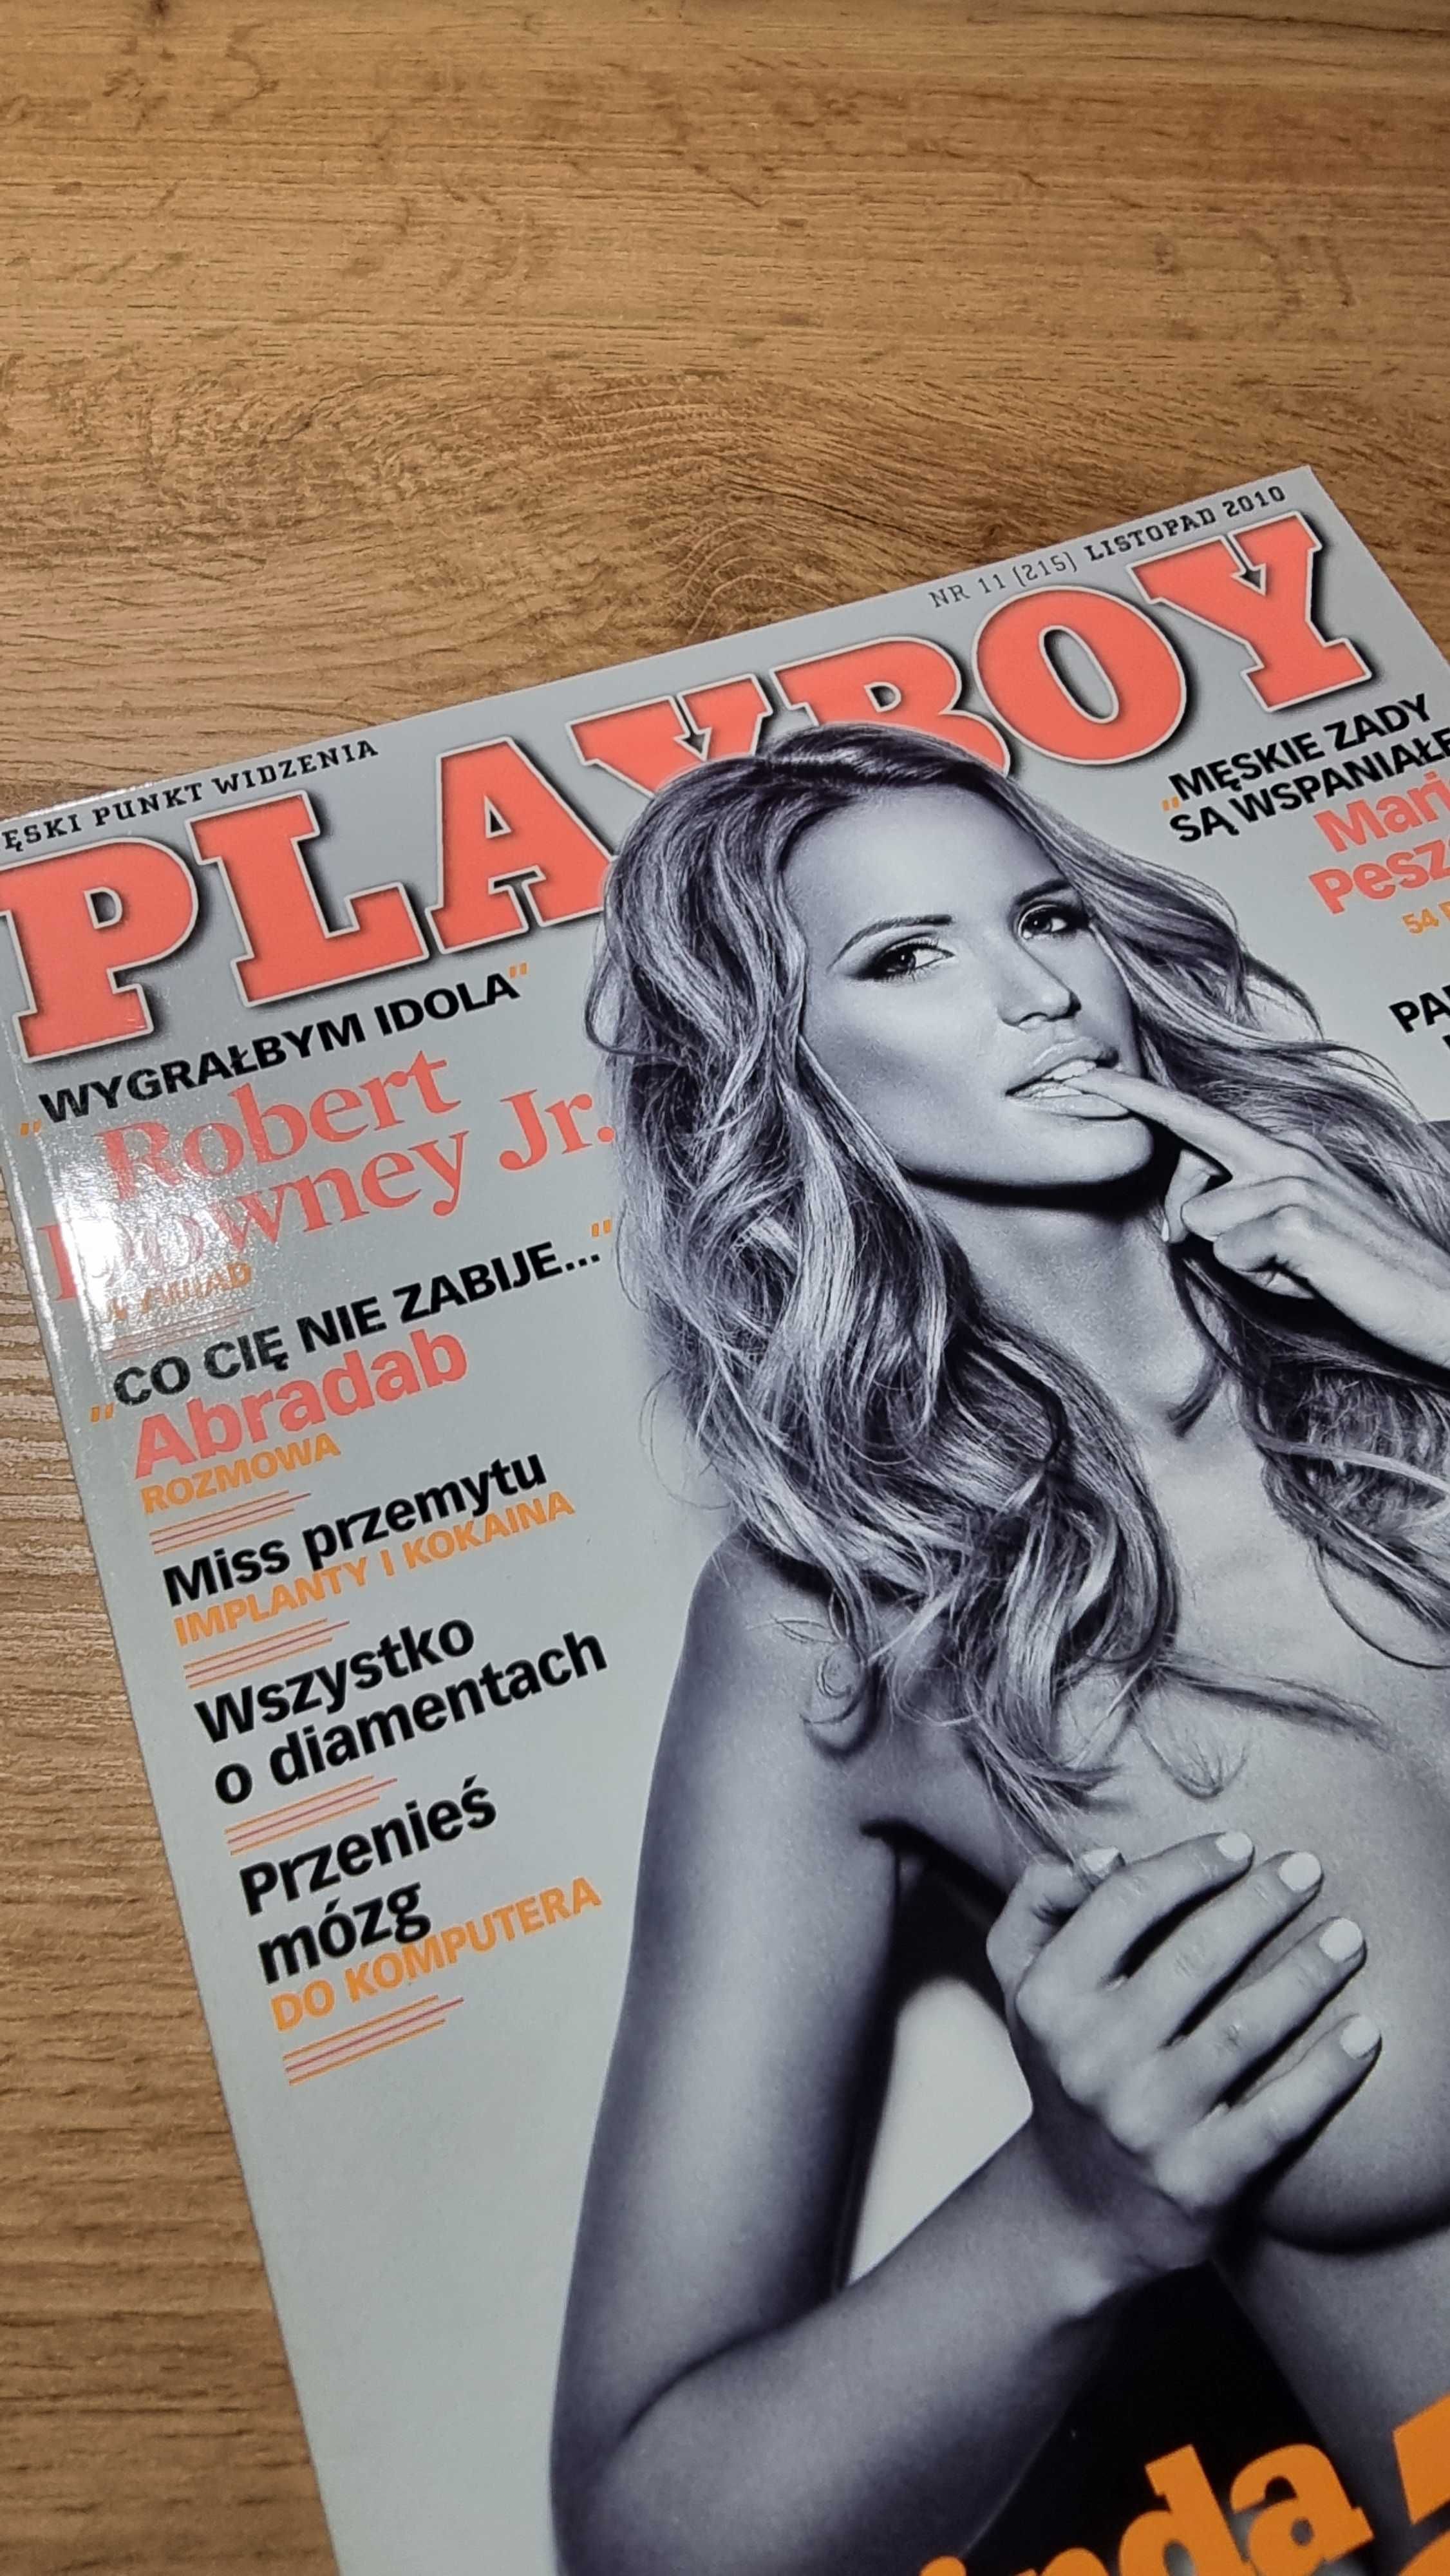 Playboy 2010 - Agnieszka Szczepaniak, Linda Zimany, Robert Downey Jr.